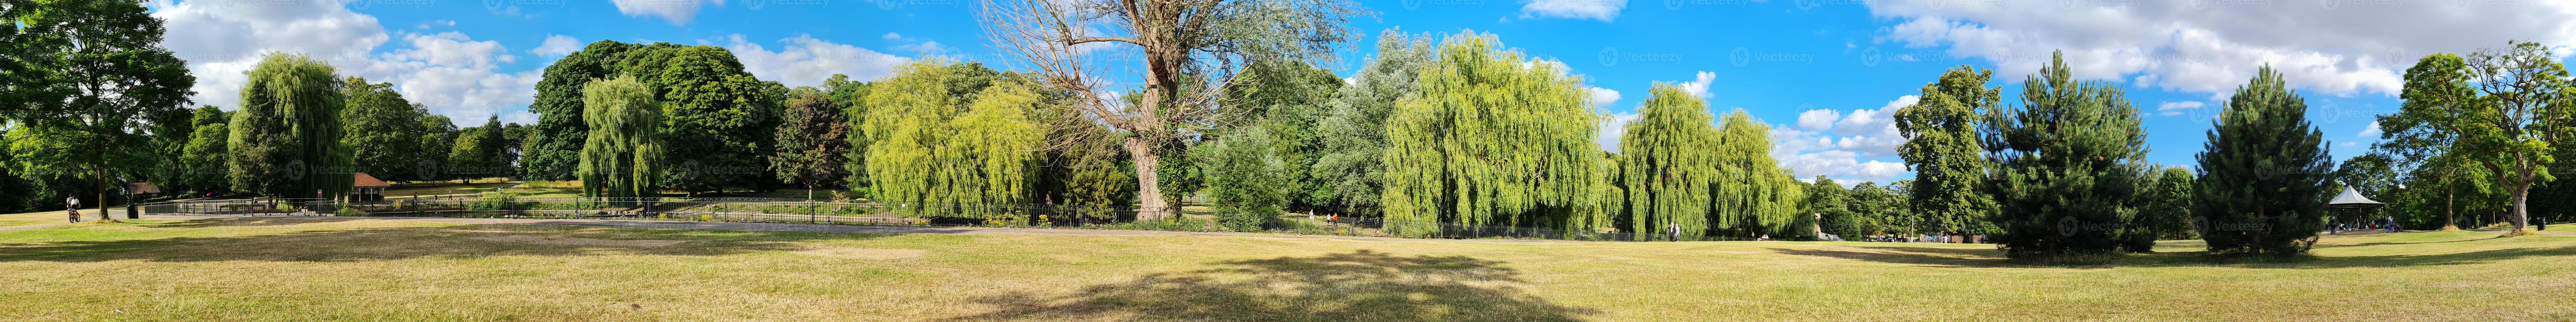 hermoso parque público local en la ciudad de luton de Inglaterra foto